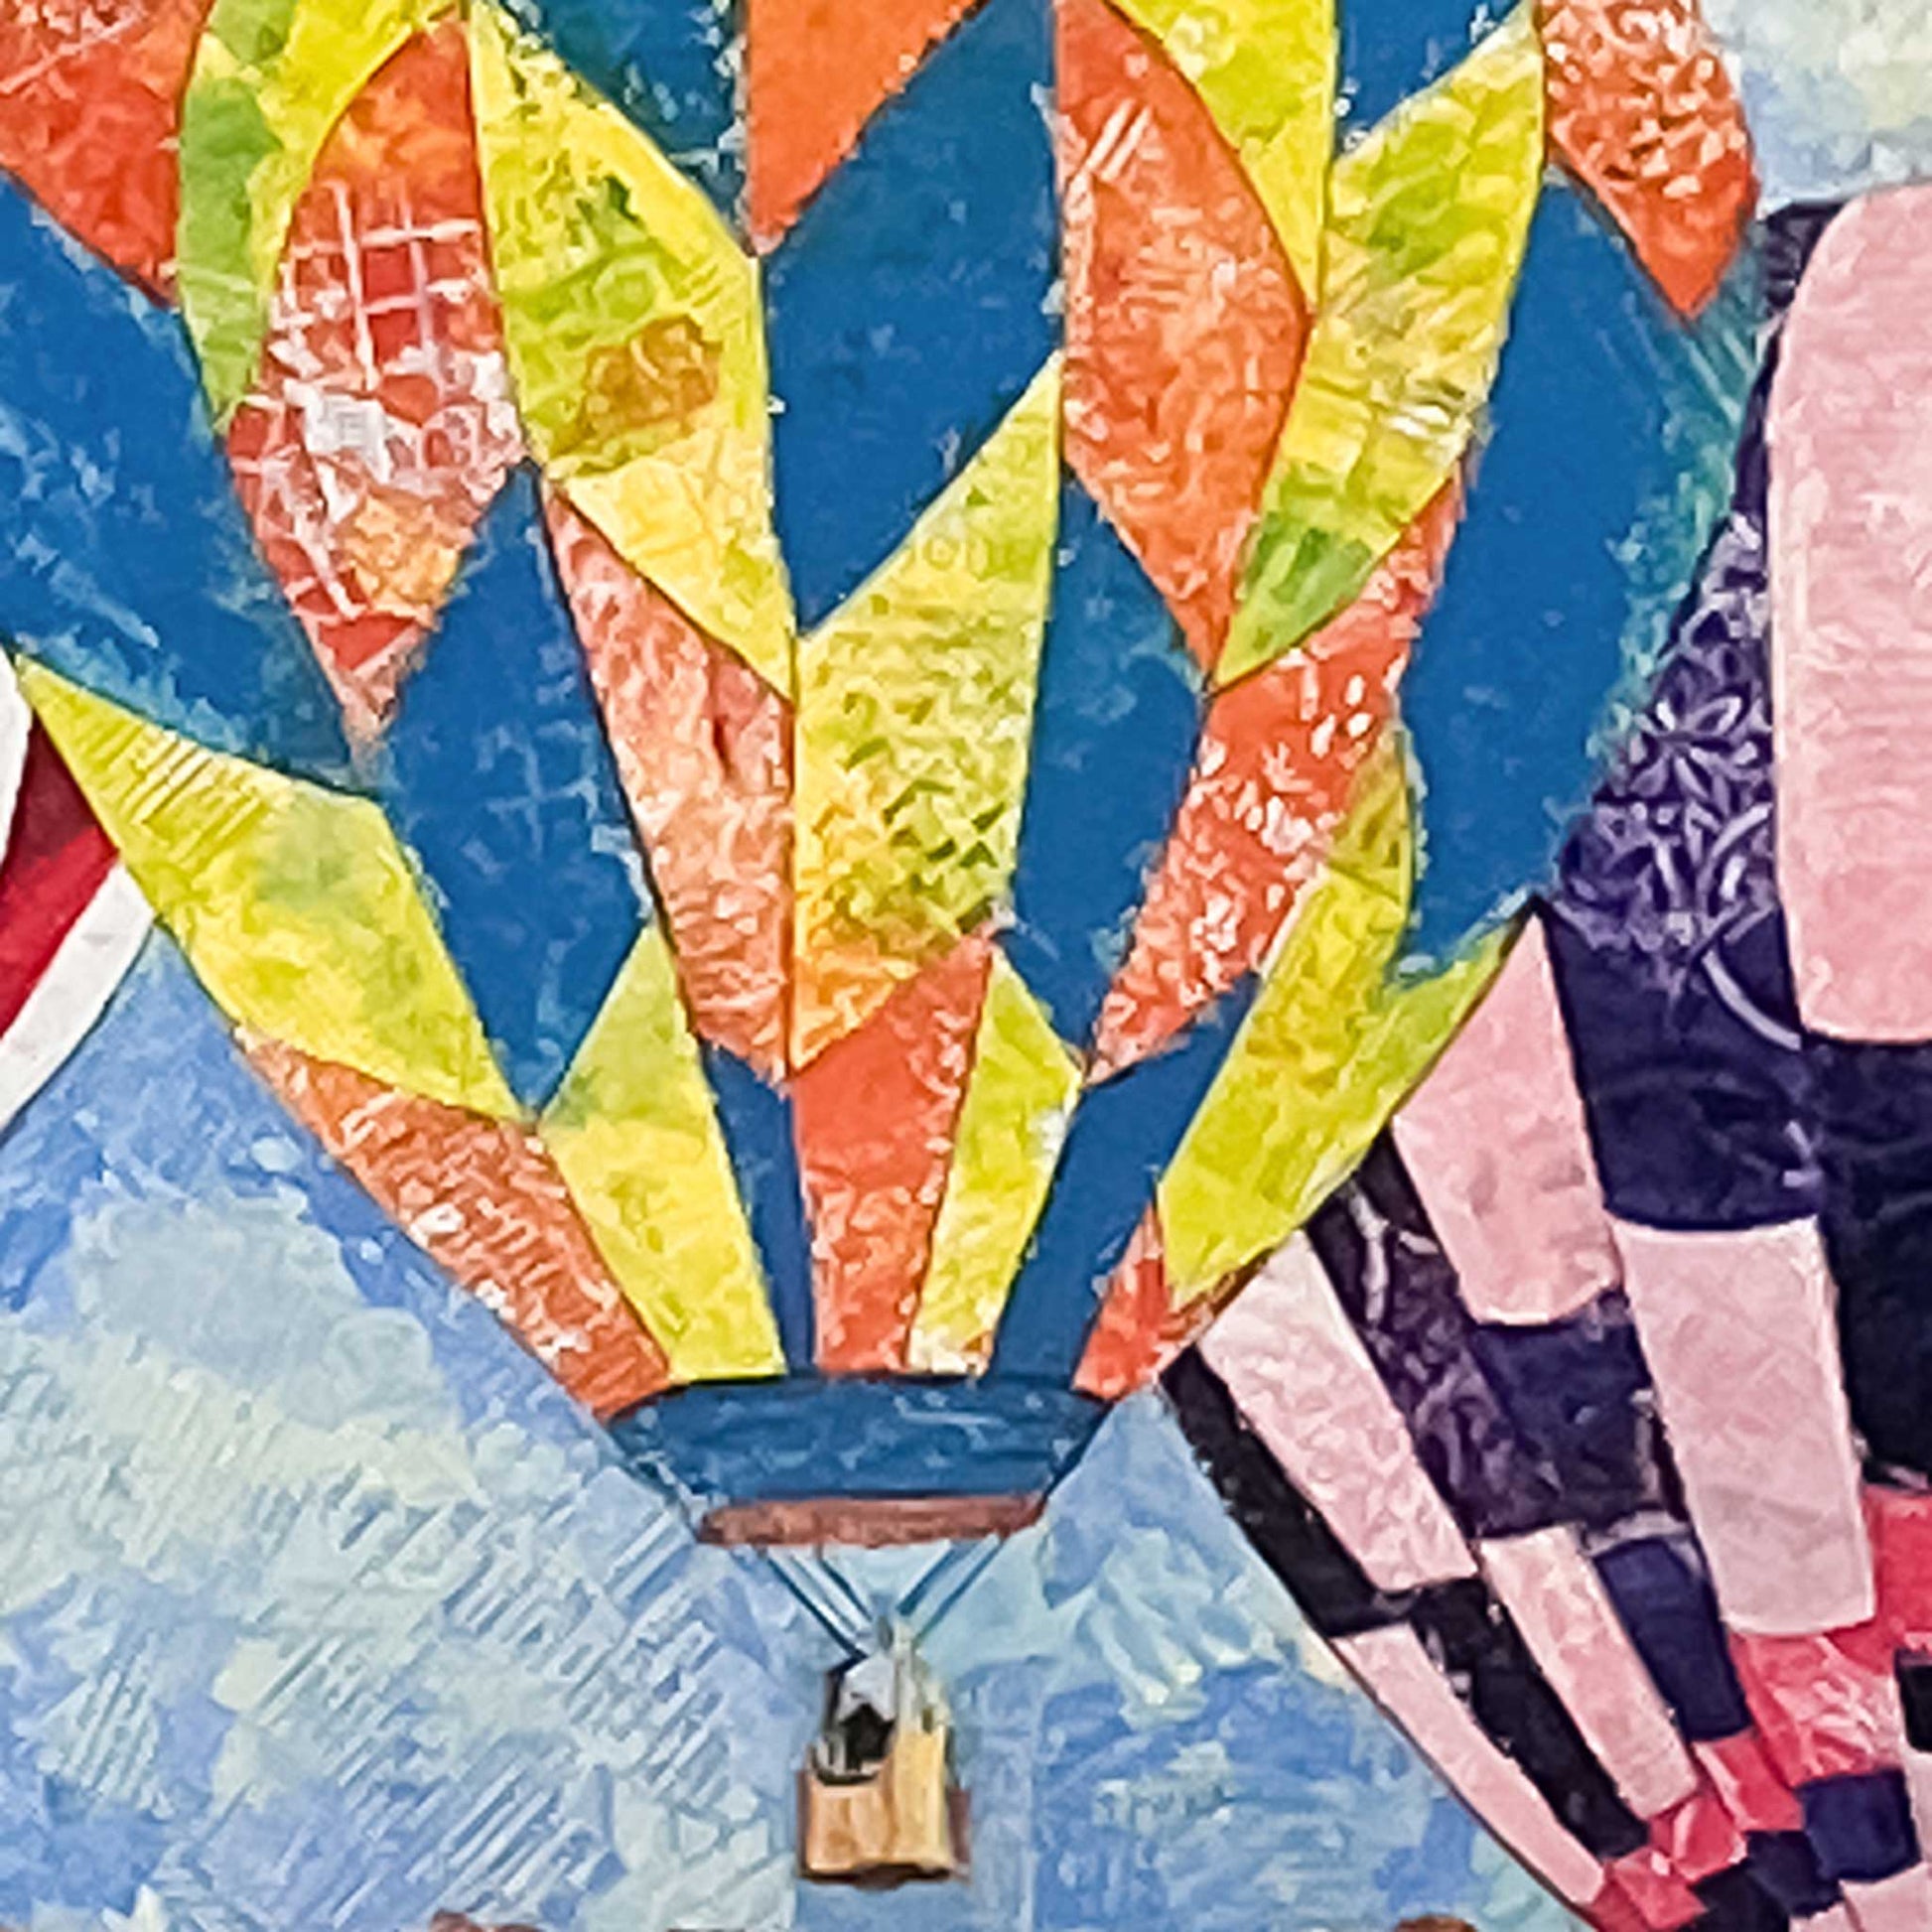 Details of EMH Fiesta Balloons Print by Artist Edward Husser, Hot Air Balloons